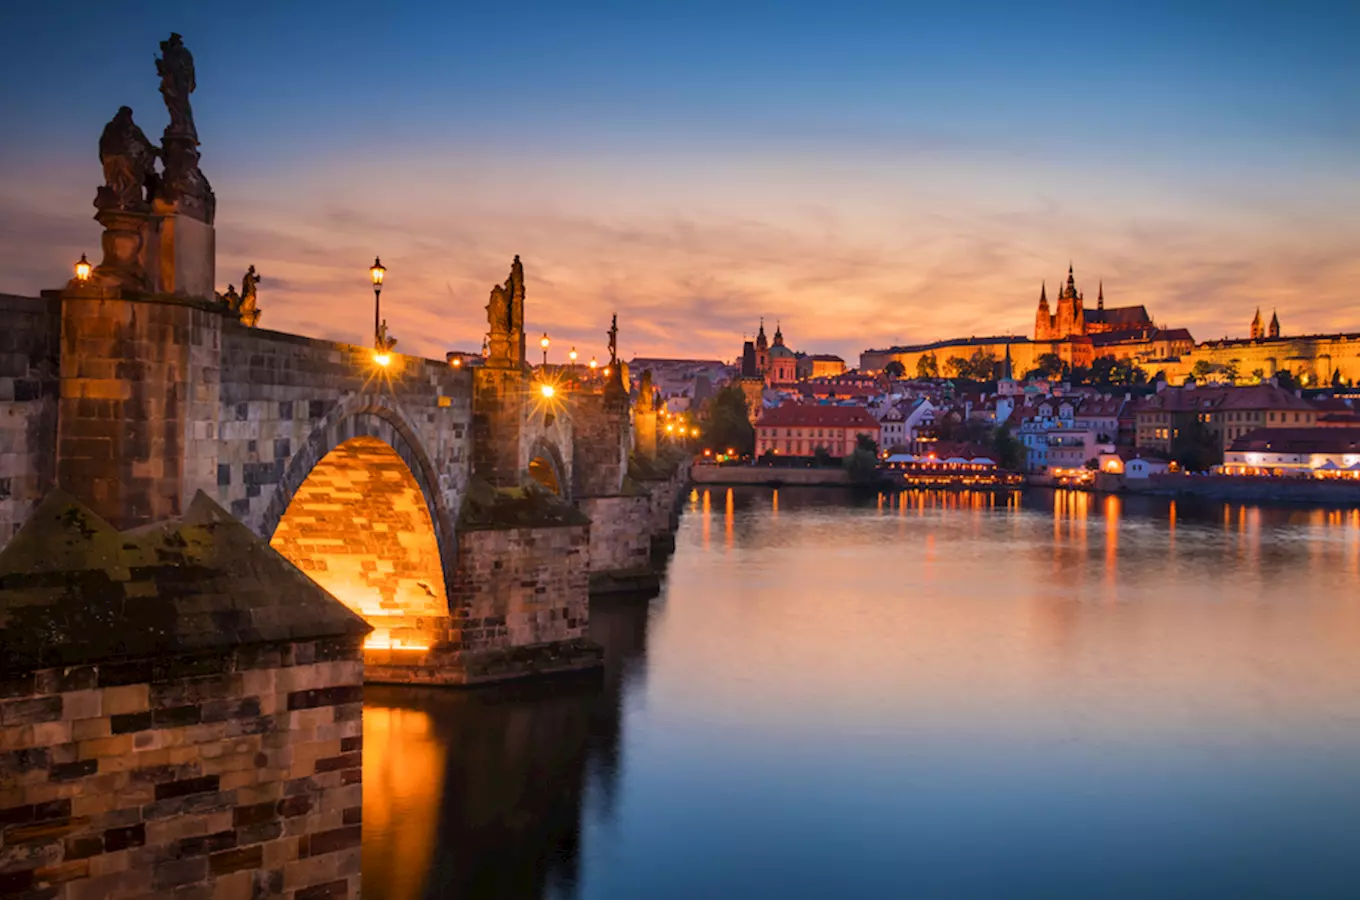 Můstky, Mostky, Mostiště a jeden zapomenutý středověký most s tajemstvím